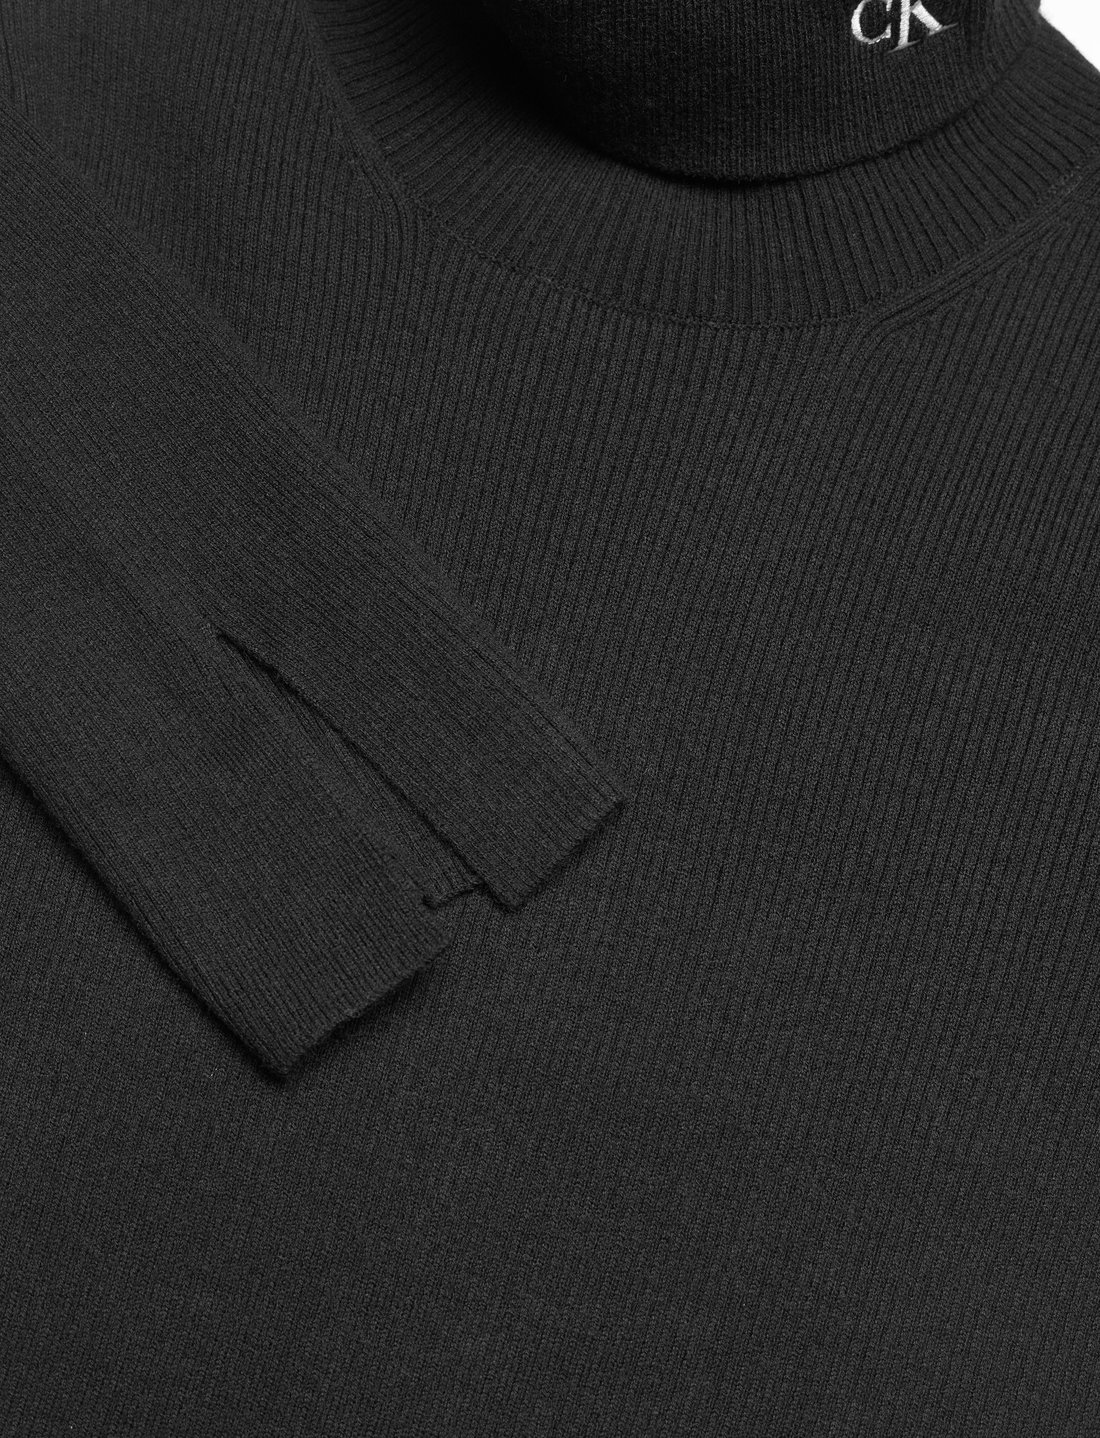 Calvin Klein Jeans Ck Tight Sweater Roll Neck Dress - Kleider